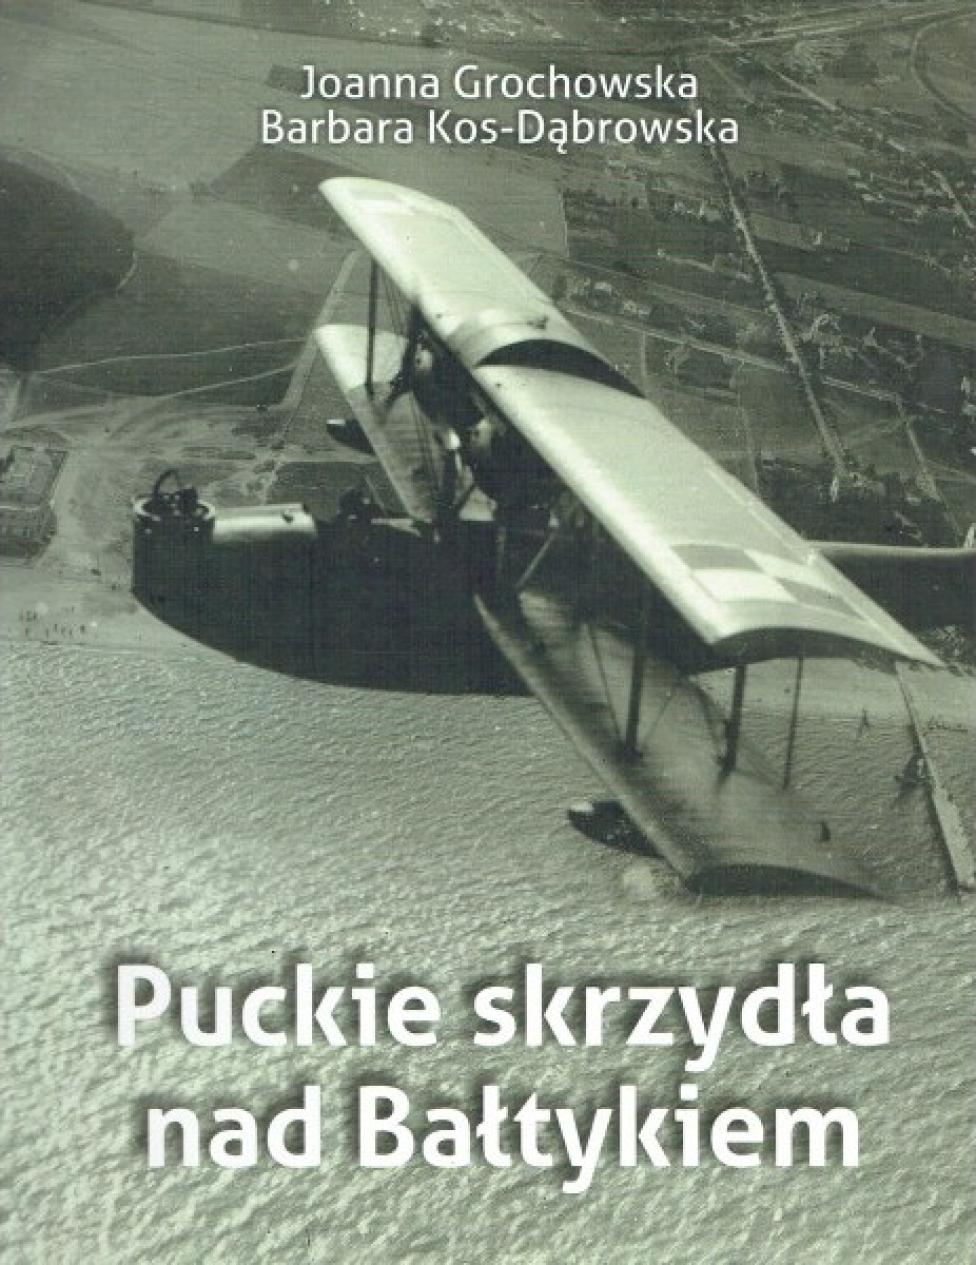 Album "Puckie skrzydła nad Bałtykiem" (fot. maszoperia.org)